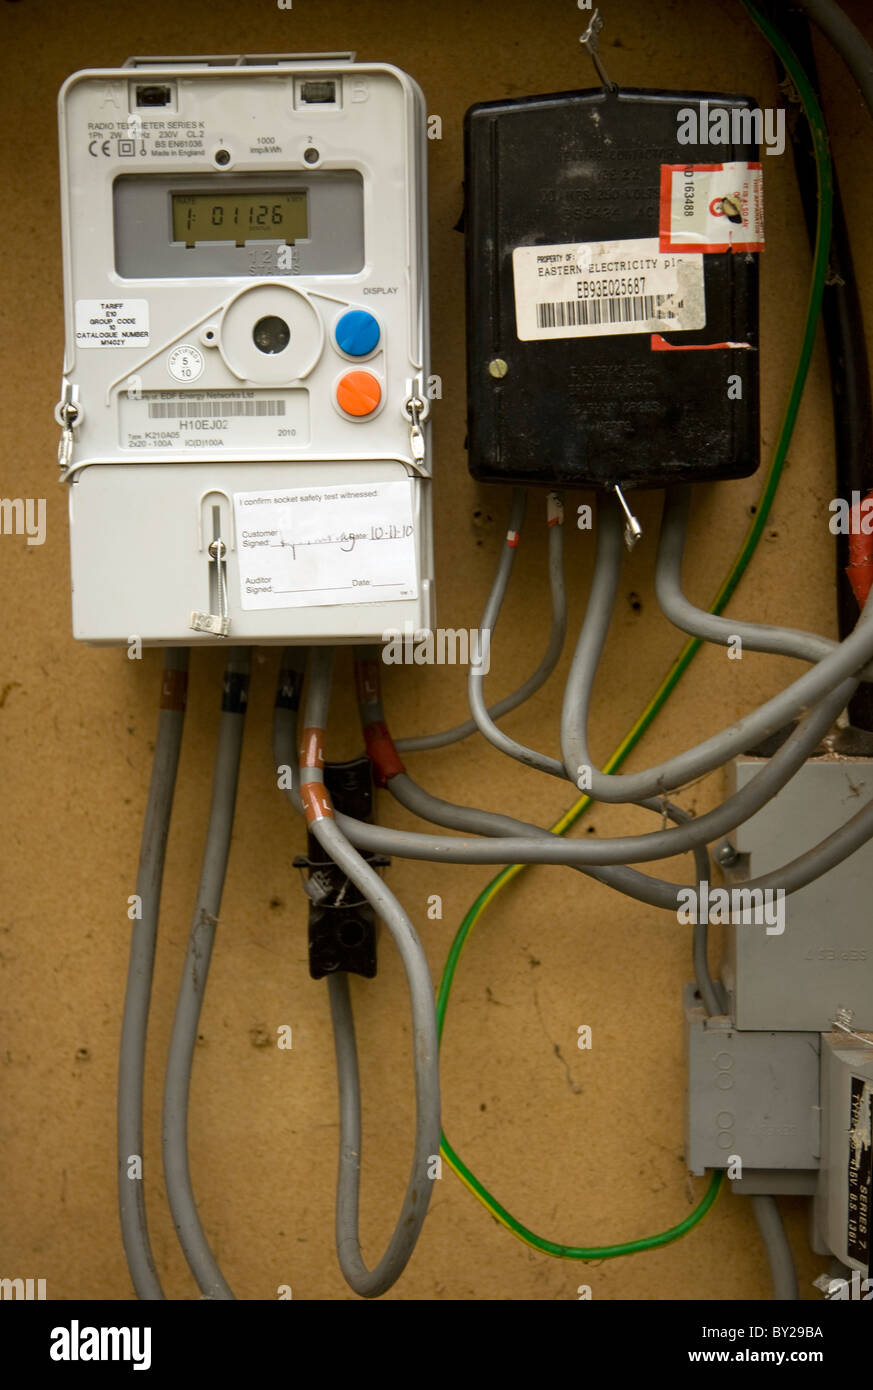 La caja del contador eléctrico de una casa Fotografía de stock - Alamy